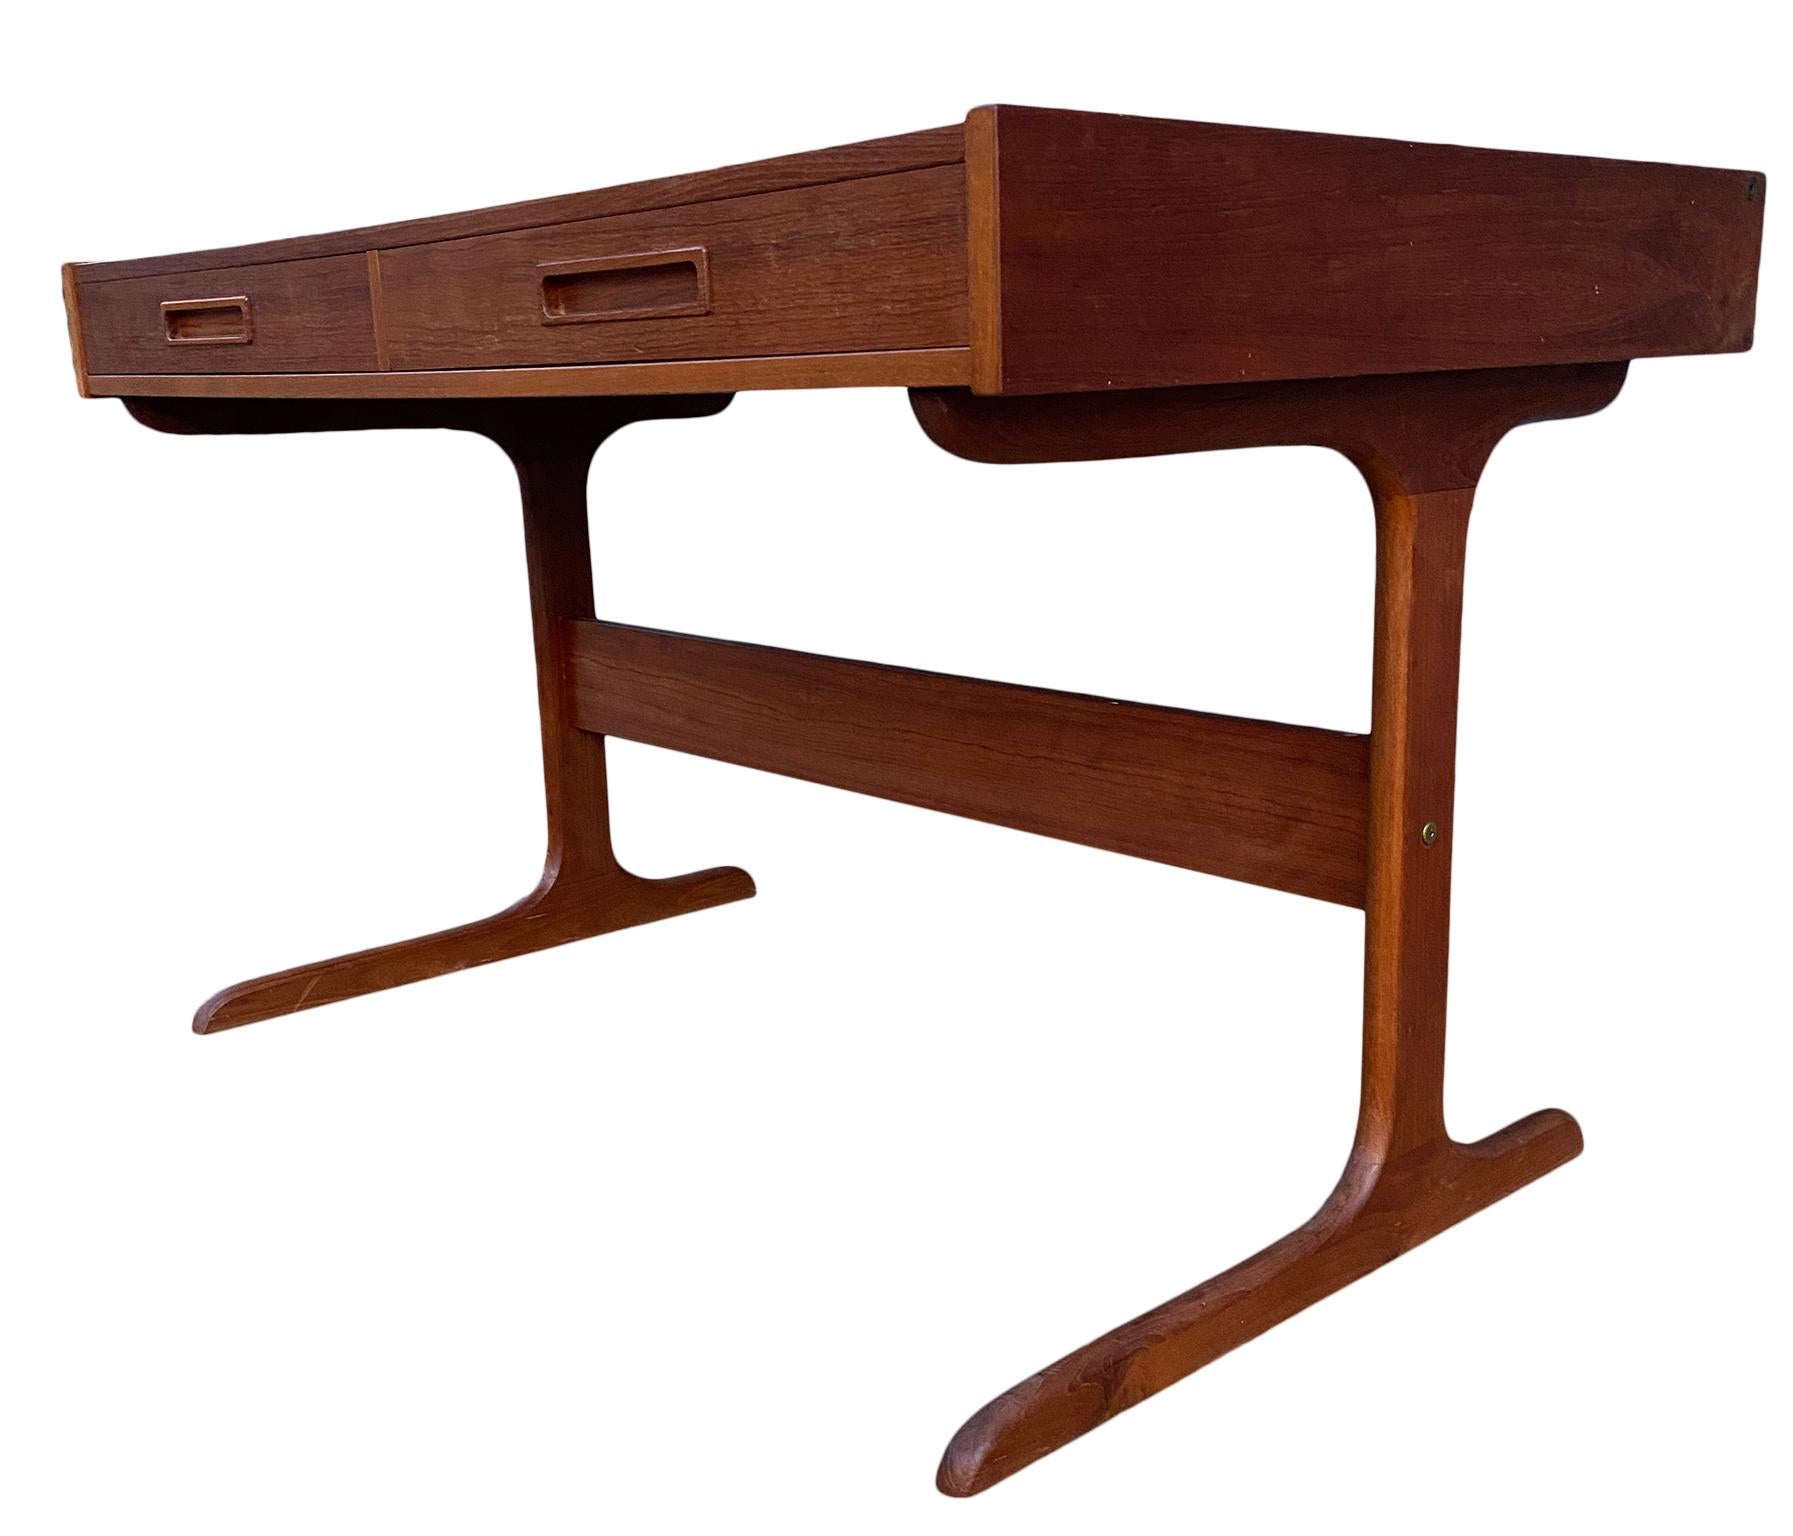 20th Century Midcentury Minimalist Teak 2-Drawer Desk with Pop Up Organizer Made in Denmark